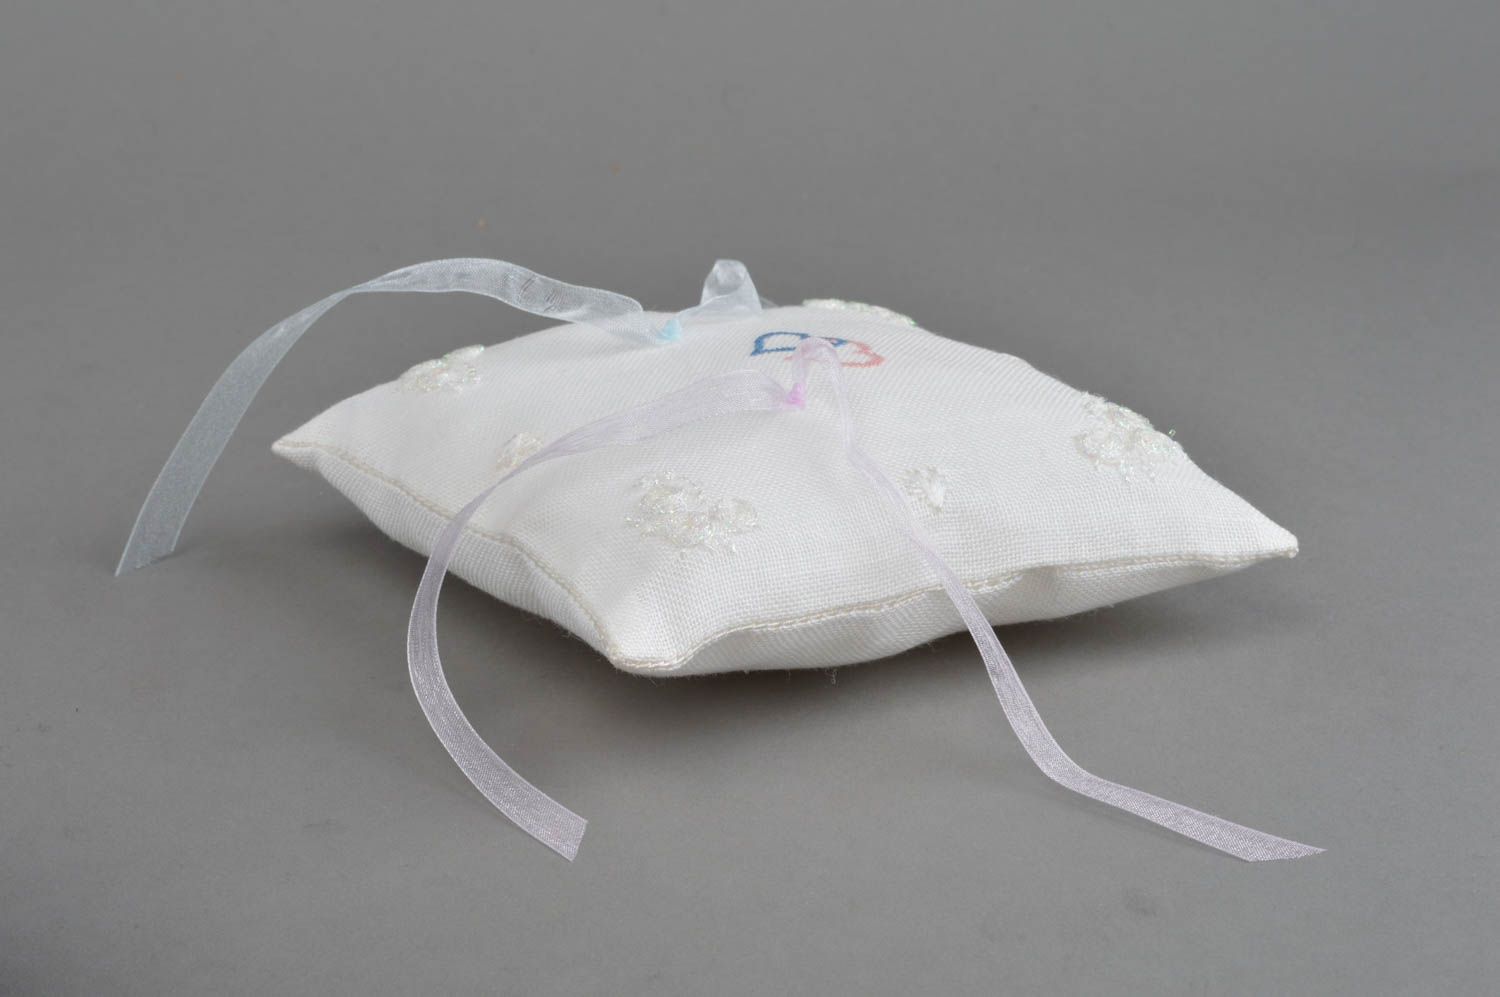 Авторская свадебная подушечка для колец ручной работы из льна с ленточками фото 2